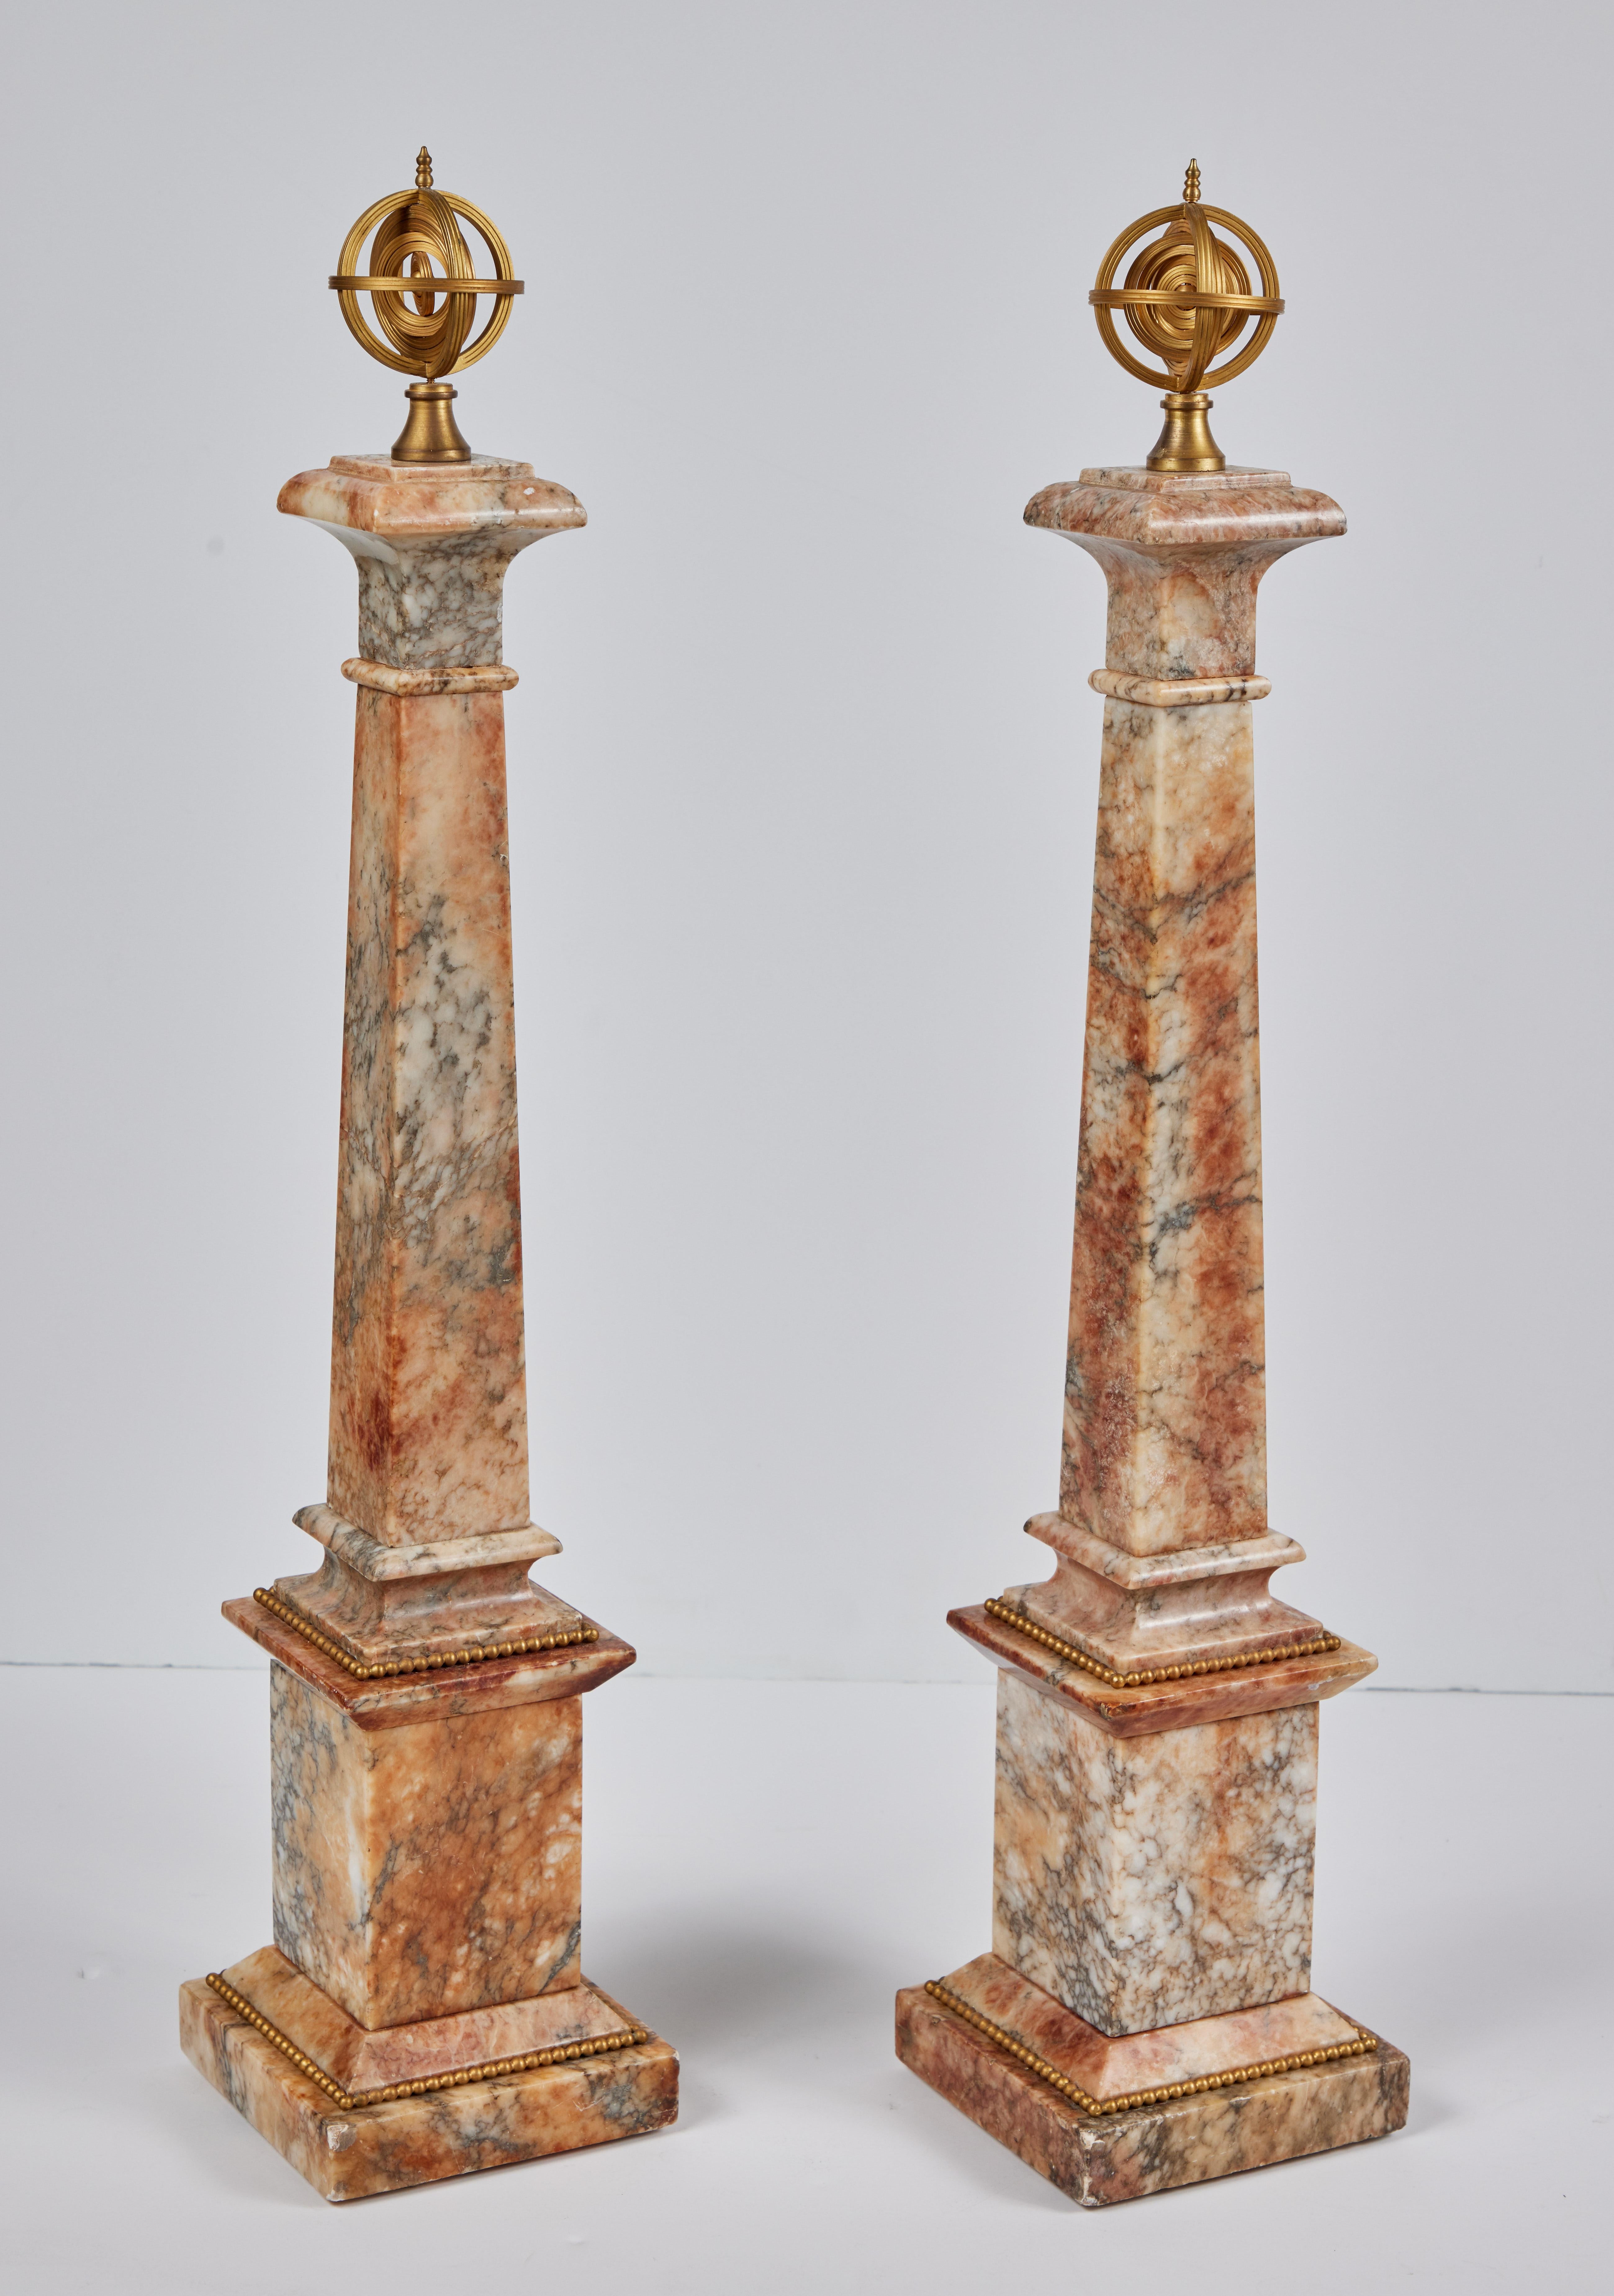 Paire d'obélisques en marbre poli, sculptés à la main, datant de 1850, surmontés de sphères armillaires en bronze doré. Chacune d'entre elles repose sur des bases surélevées ornées de chaînes de bronze doré et de montures en forme de perles.